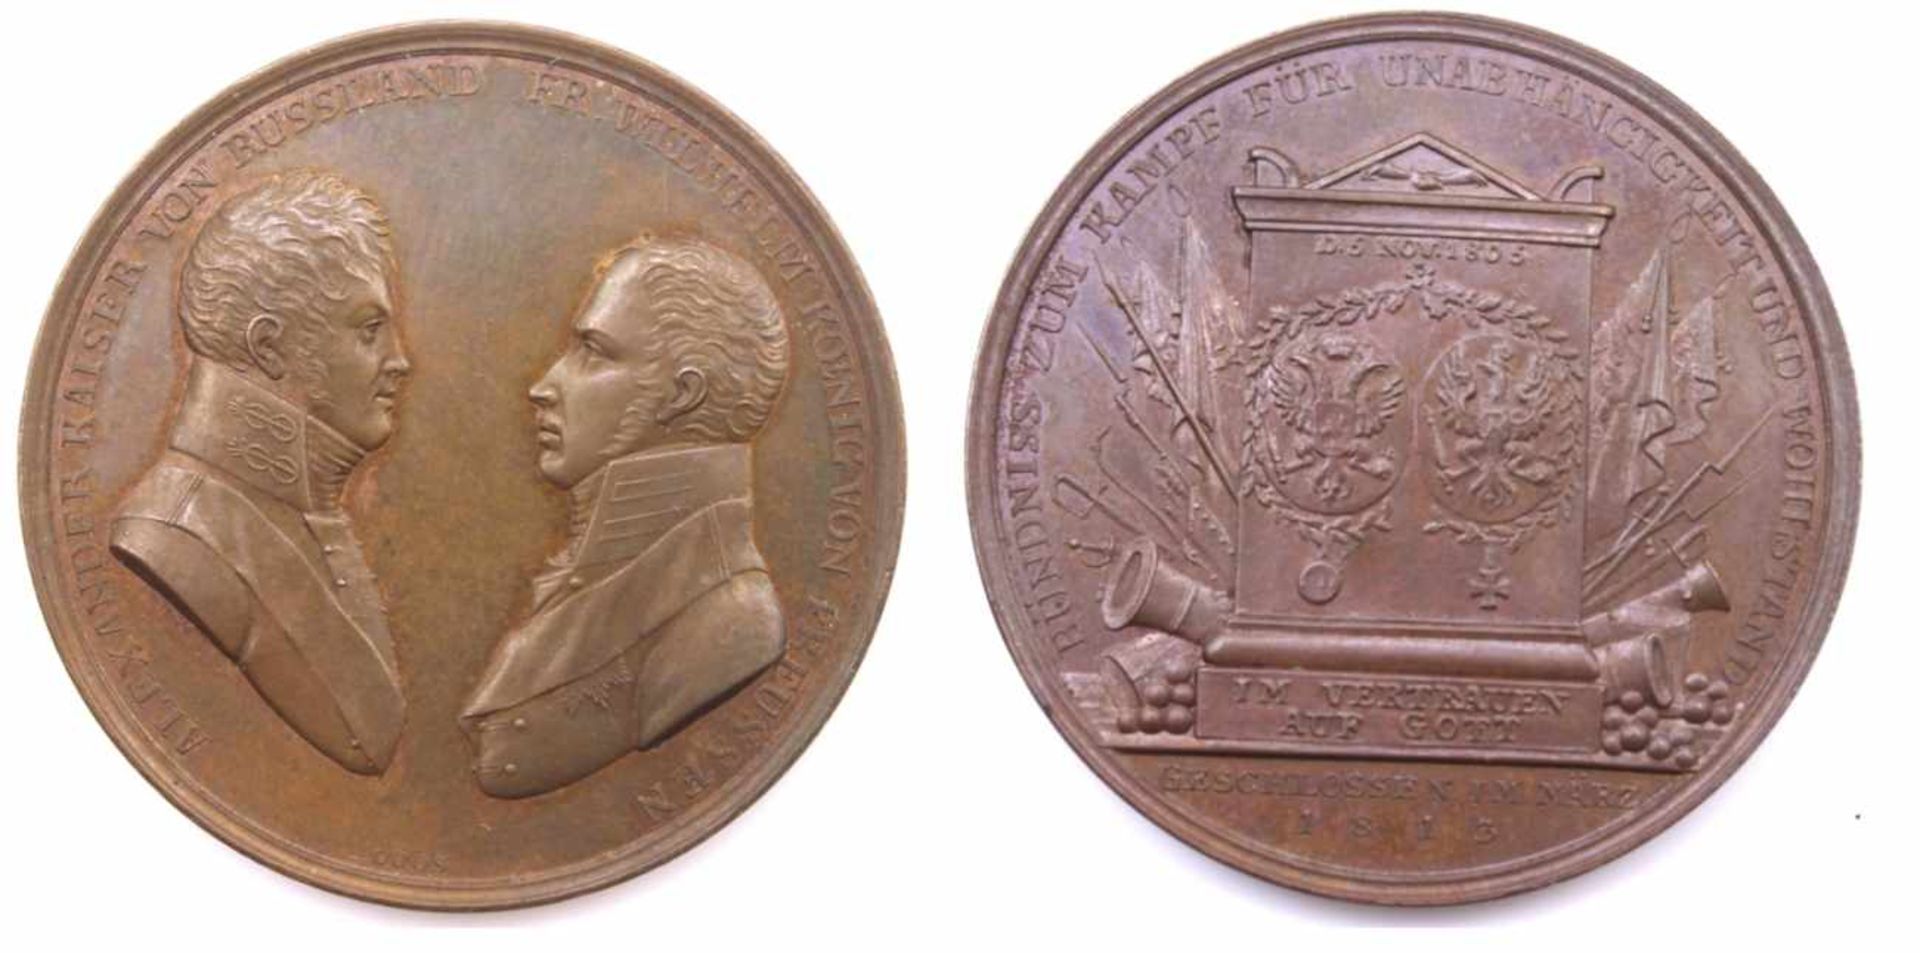 Medaille - Entwurf Daniel Friedrich Loos (1735 Altenburg - 1819 Berlin) 1813, Bronze, Vorderseite: